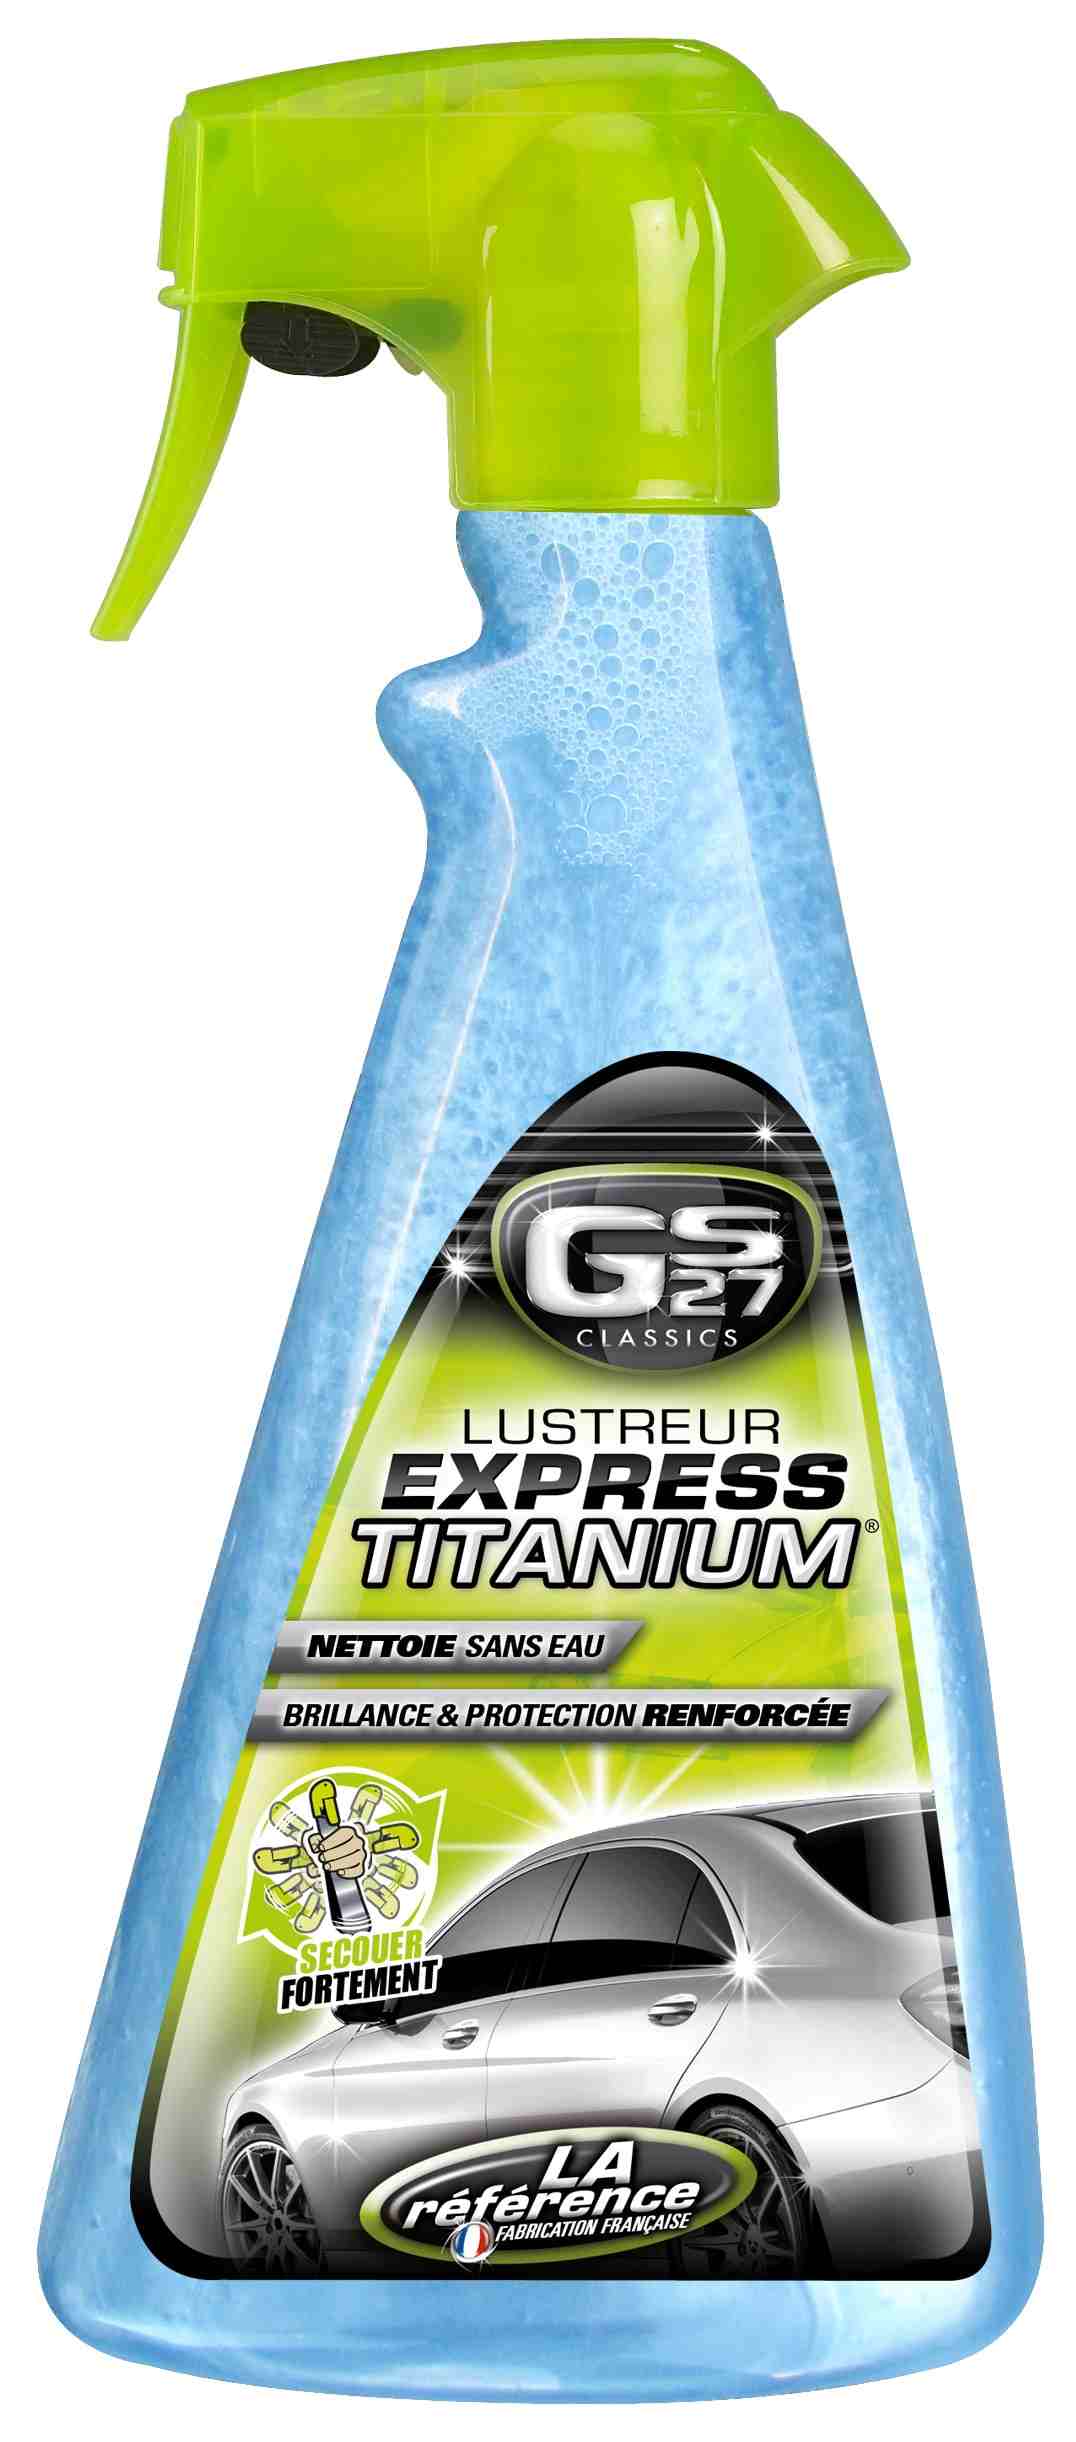 CLASSICS Lustreur Express TITANIUM 500 ml